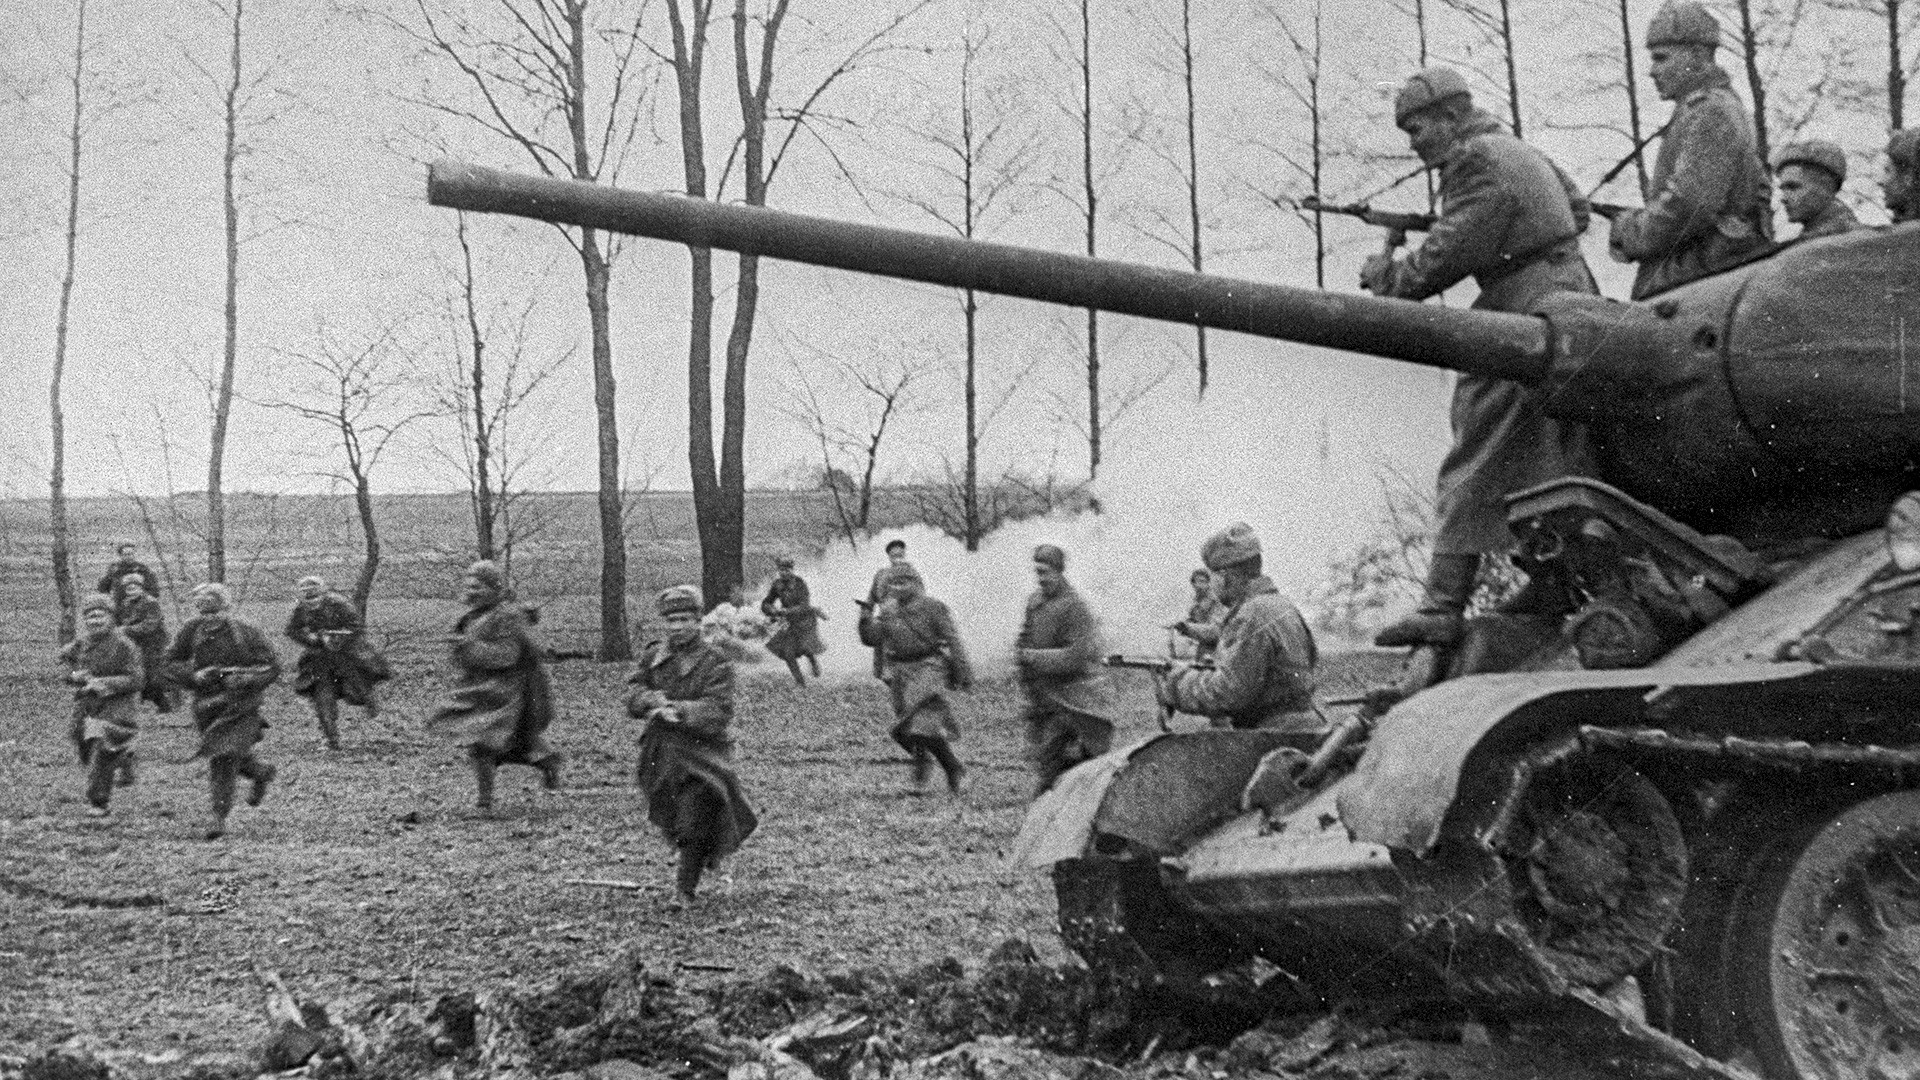 Sovjetsko pješaštvo i tenkovi jurišaju na njemačke položaje. Mađarska.
